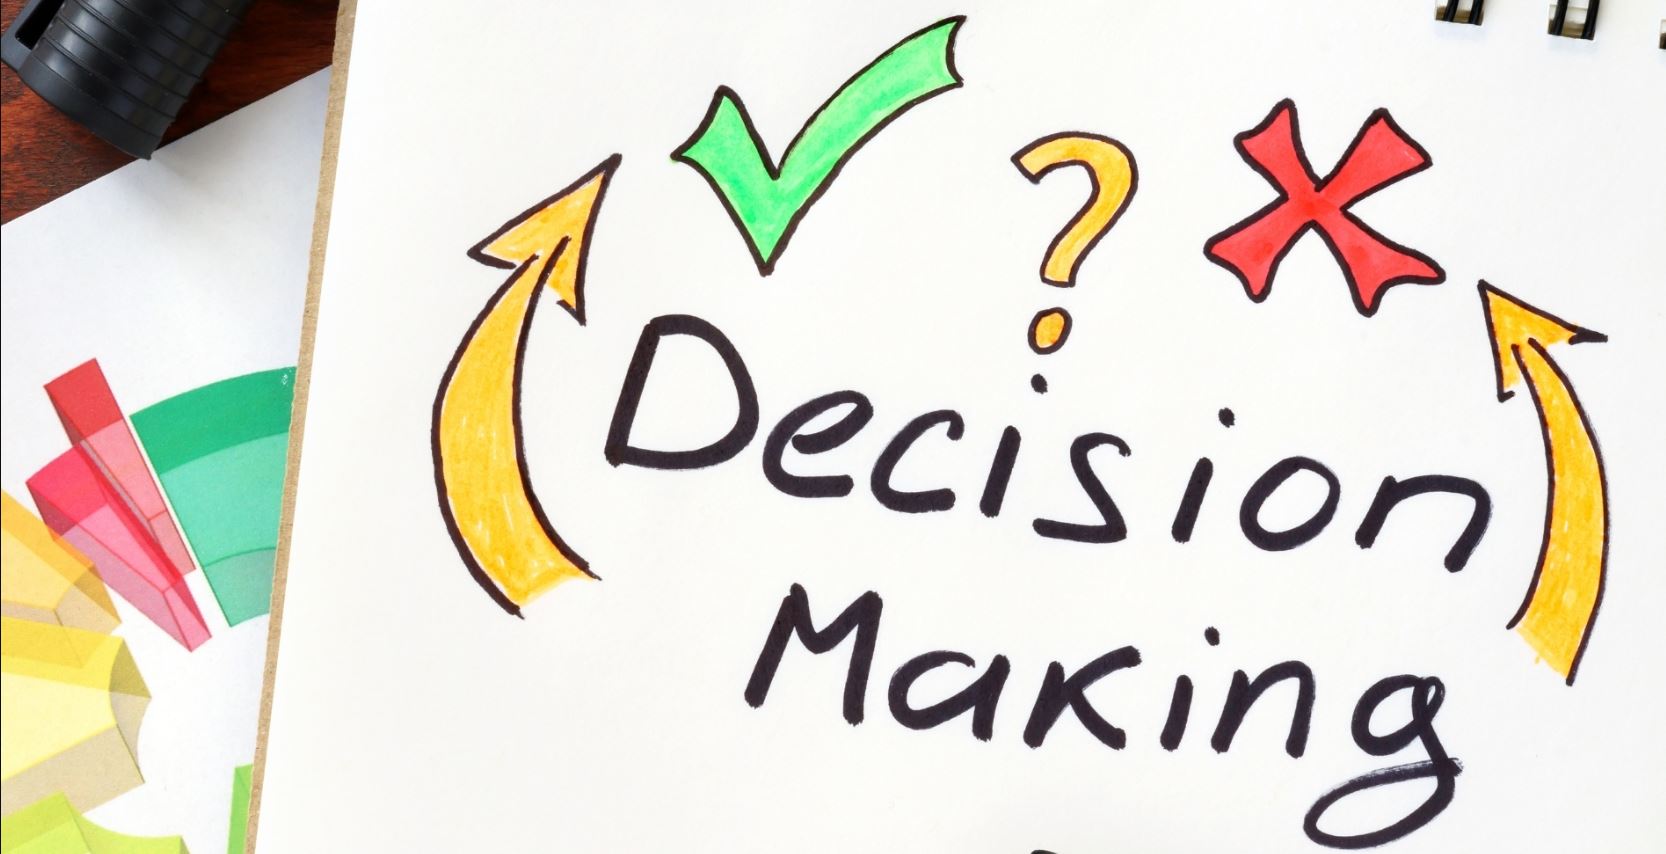 metode pengambilan keputusan di perusahaan